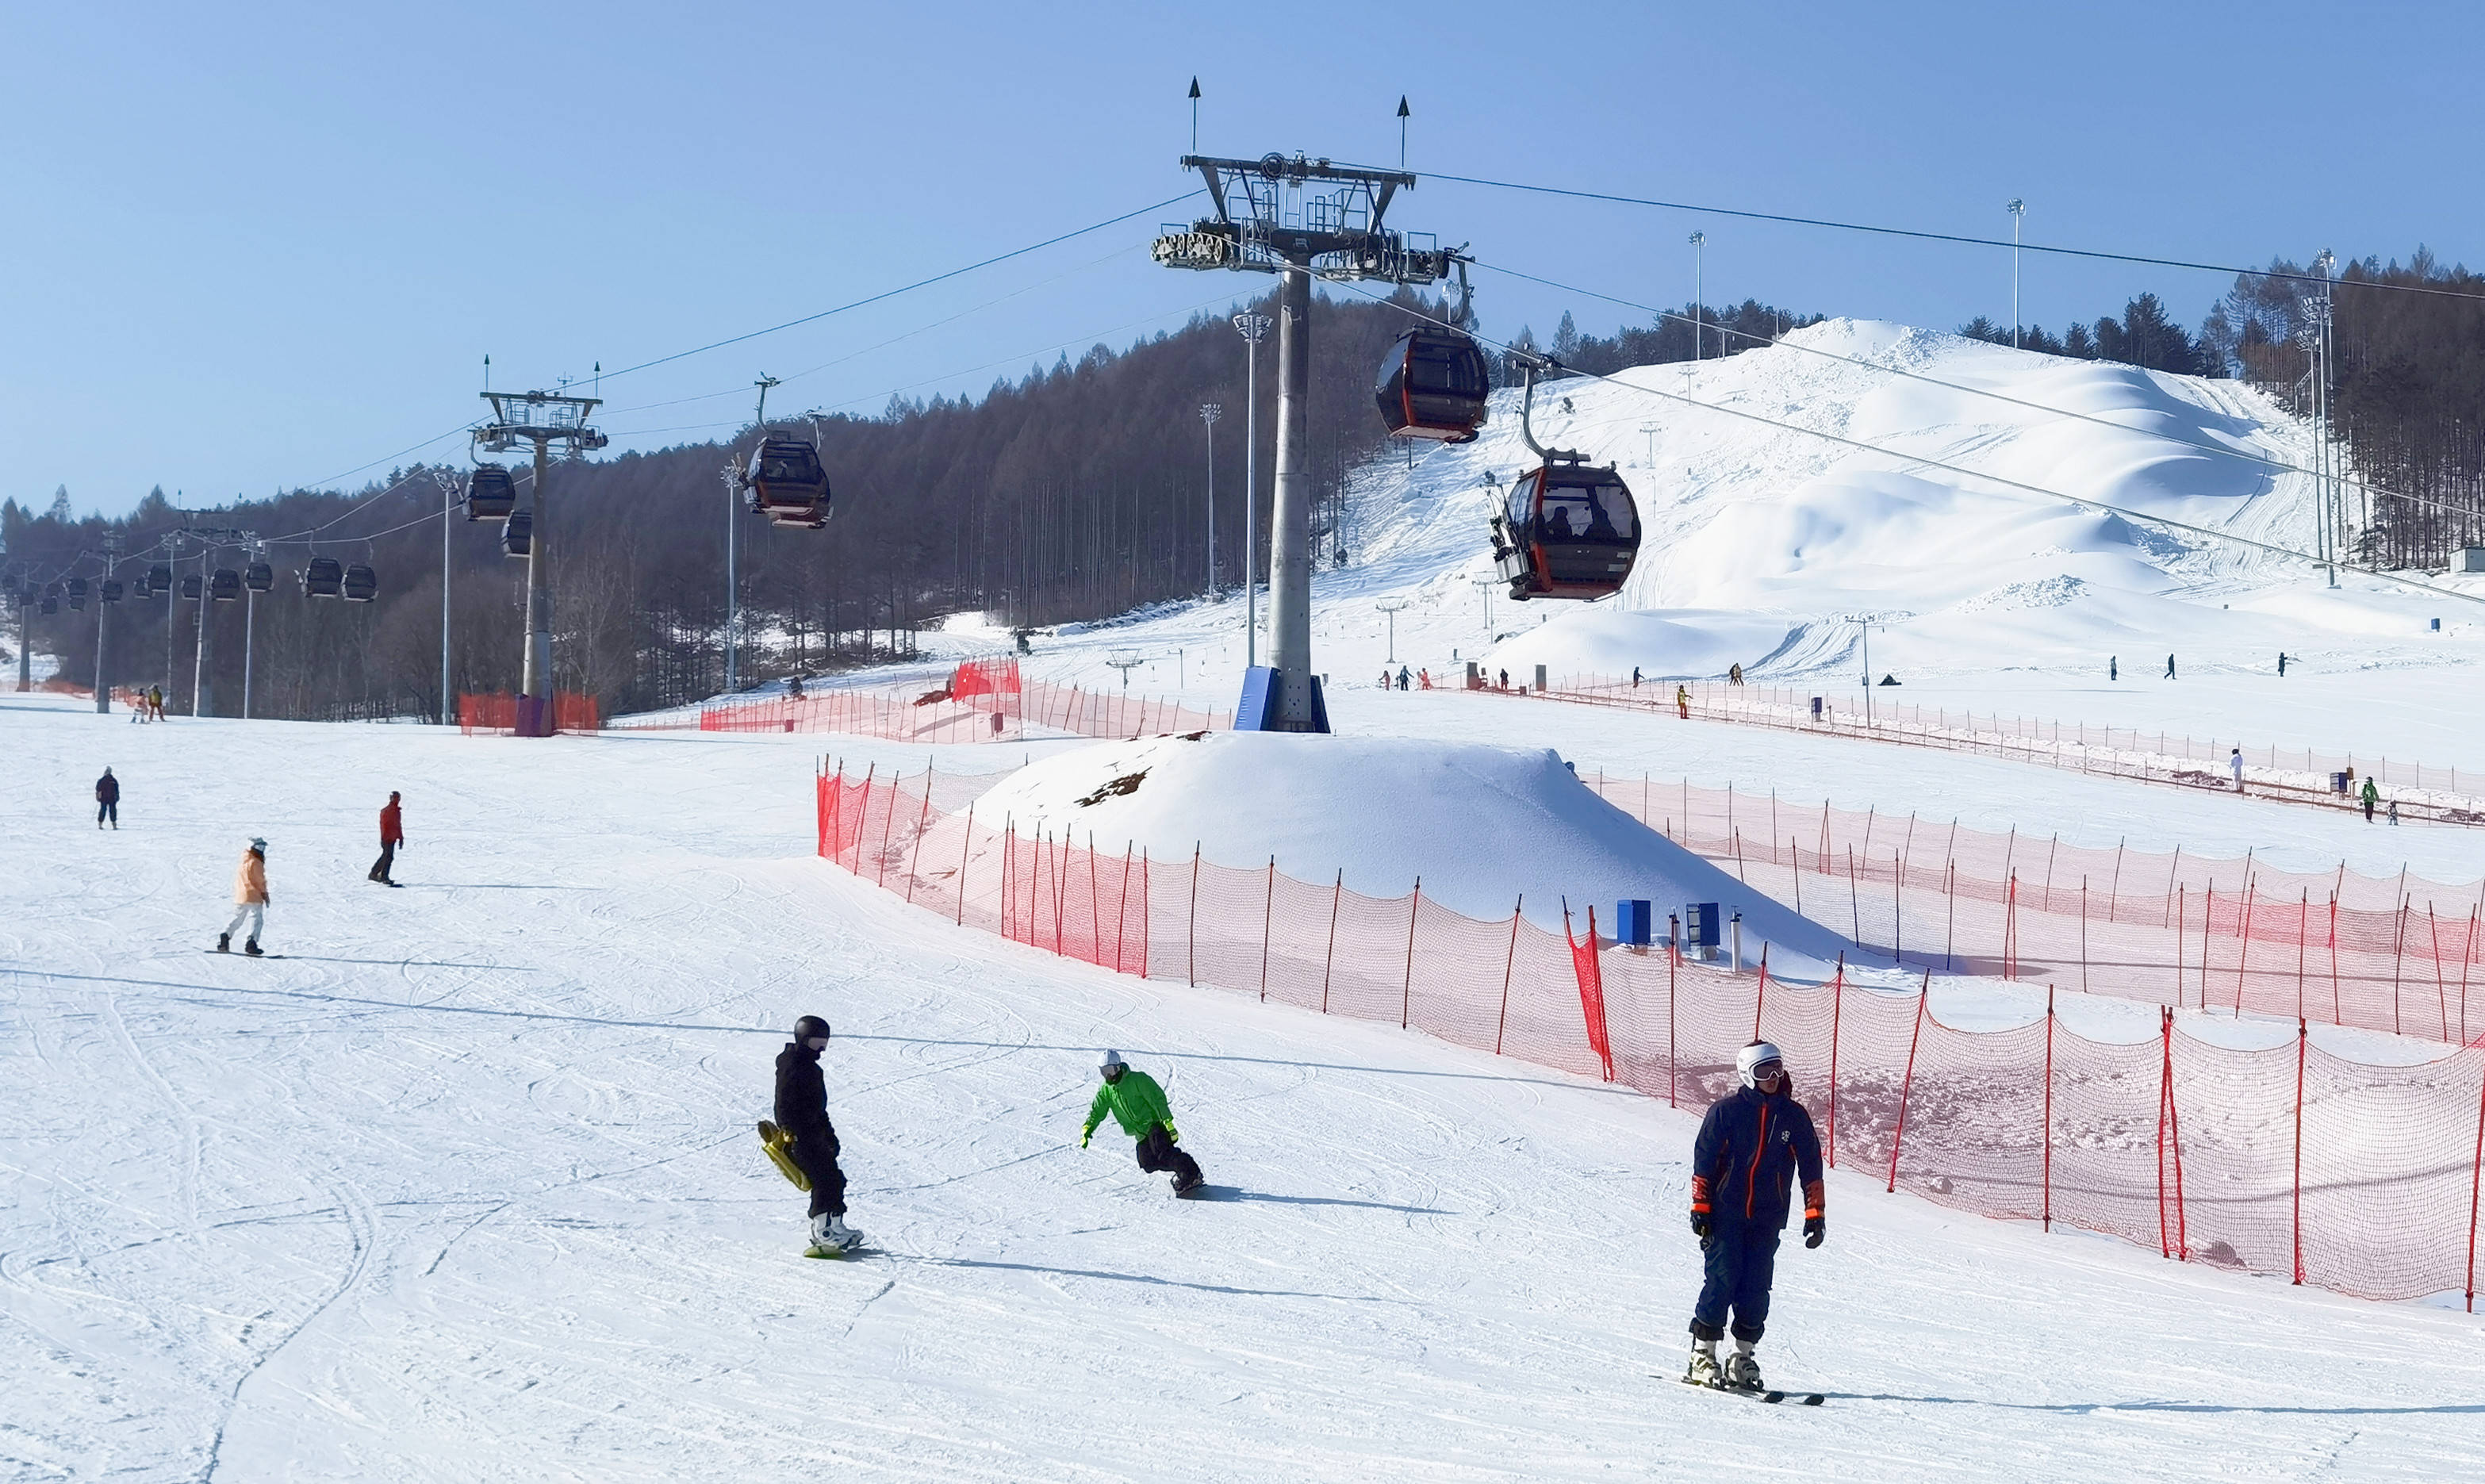 喜迎雪博会,万峰通化滑雪度假区万事俱备待客来